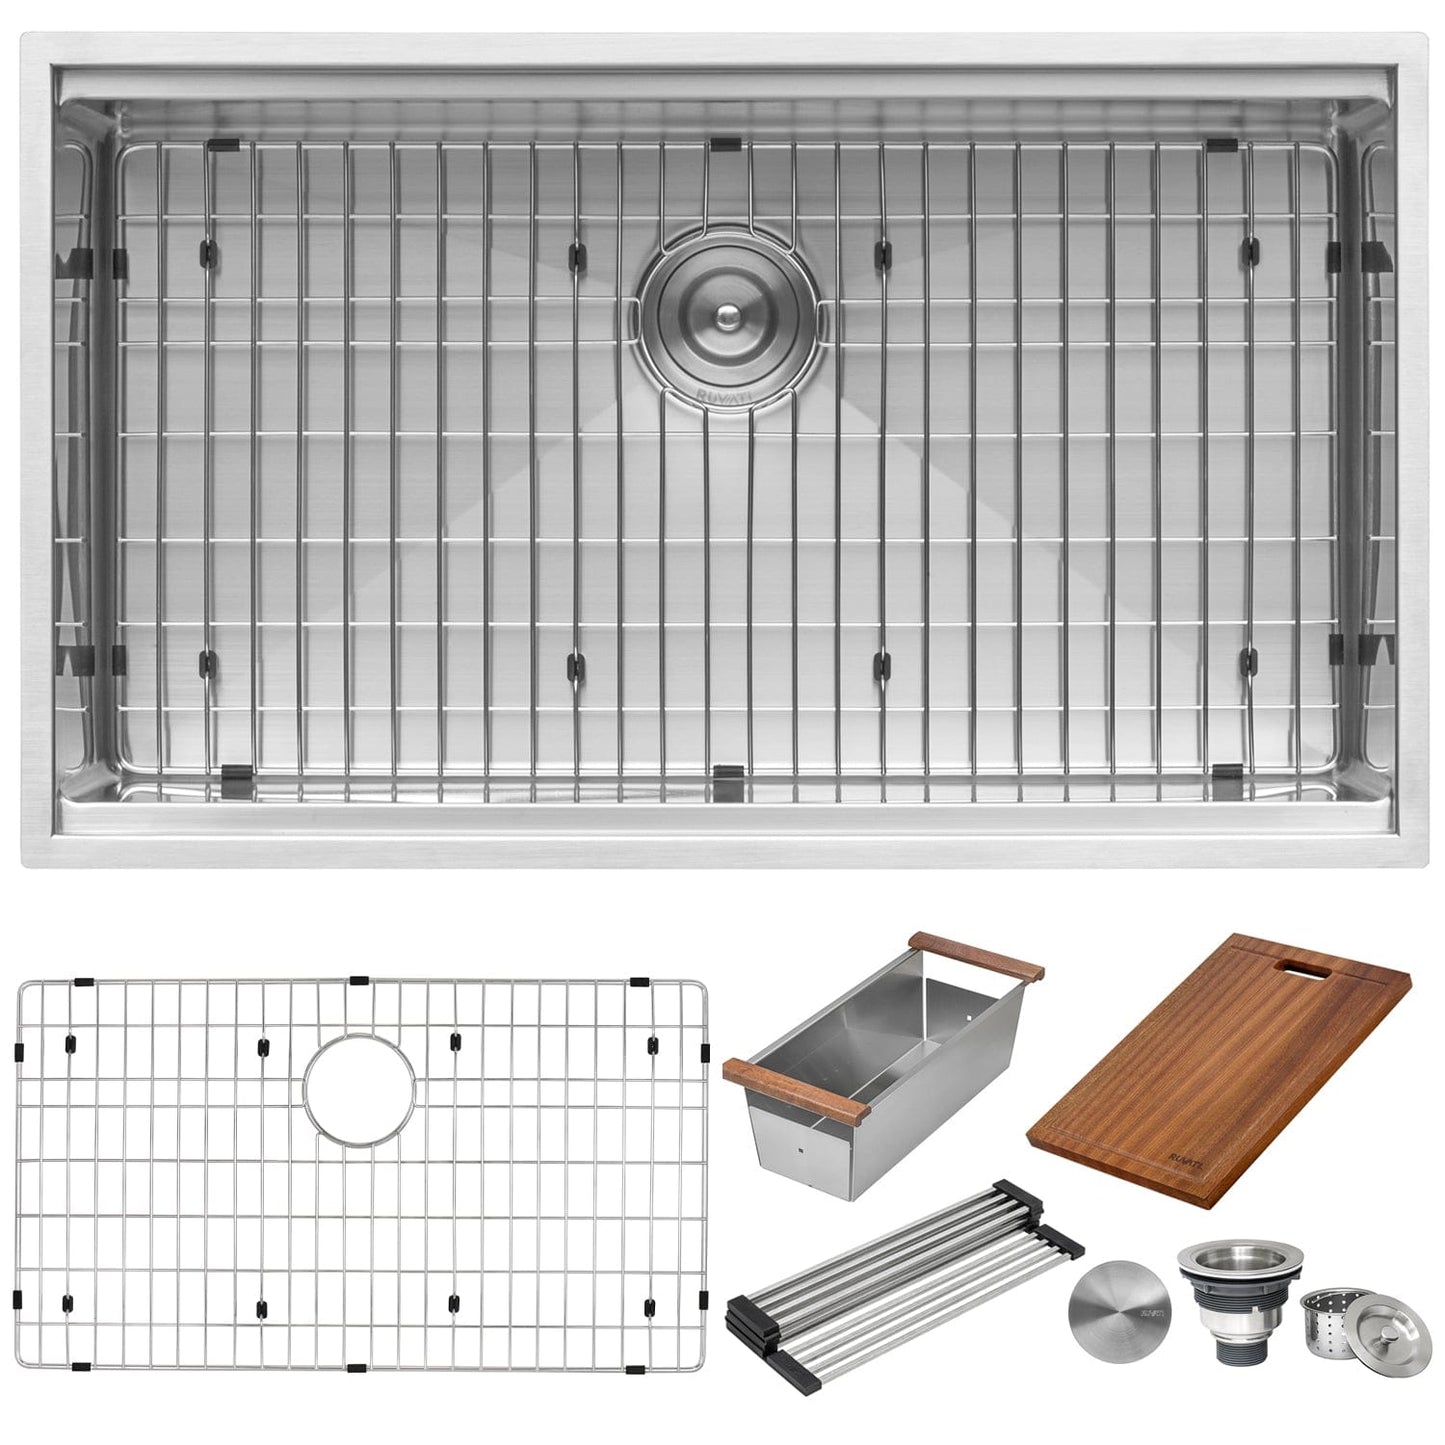 Ruvati Roma Pro 32" Workstation Ledge Stainless Steel Kitchen Sink RVH8301